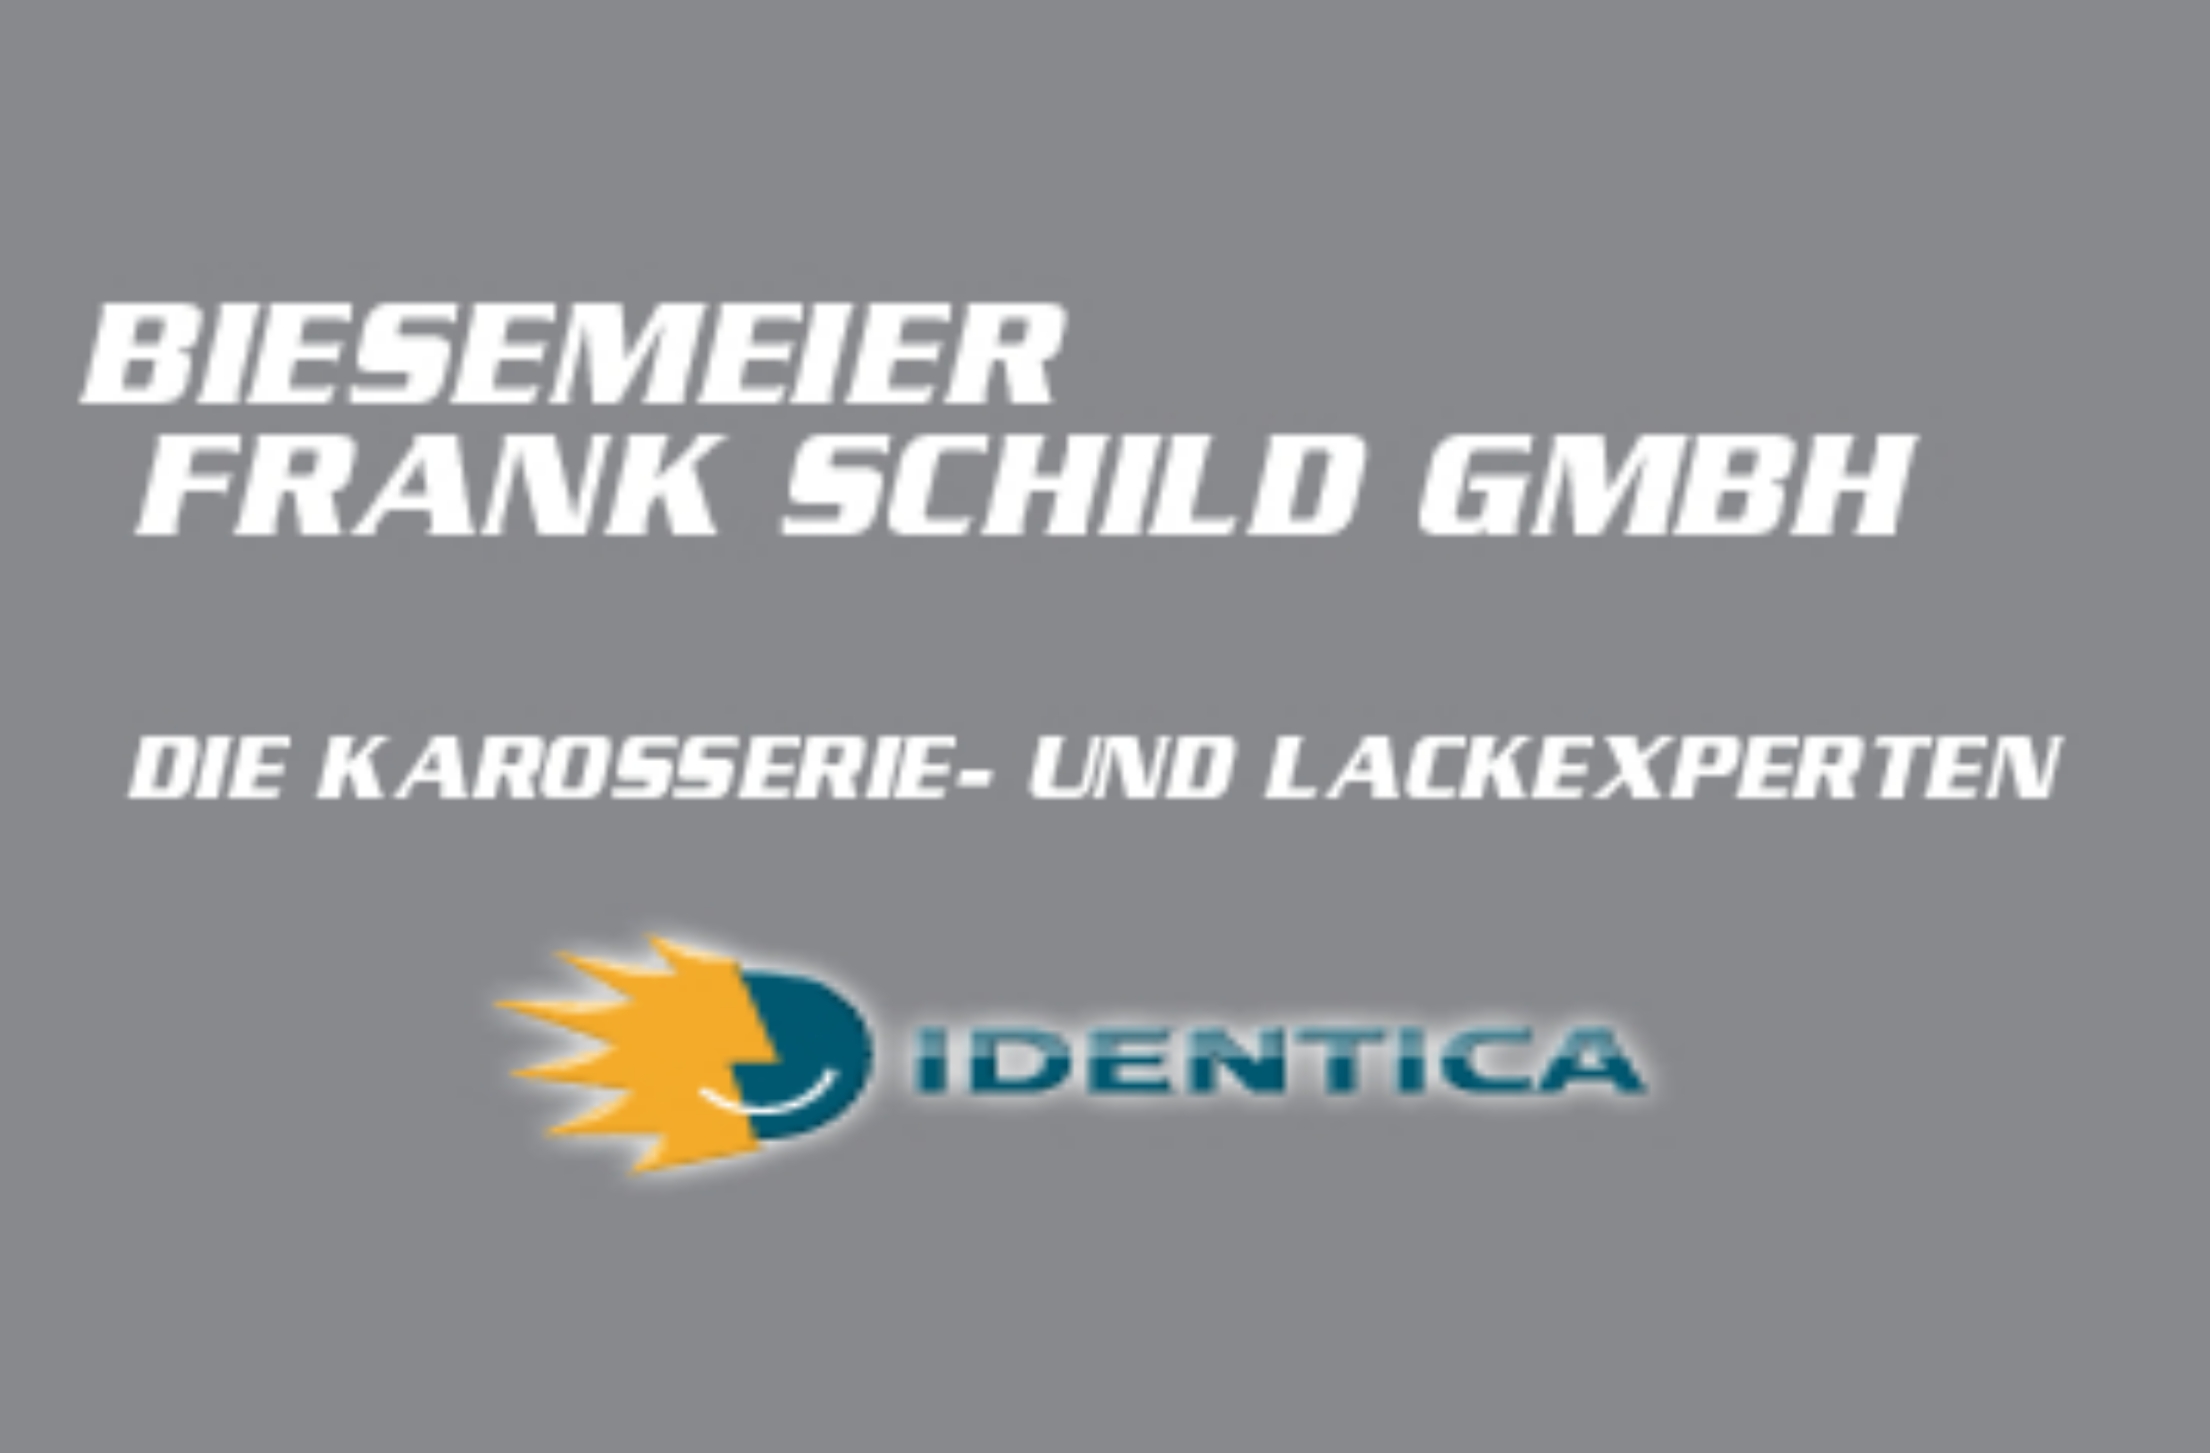 Biesemeier Frank Schild GmbH